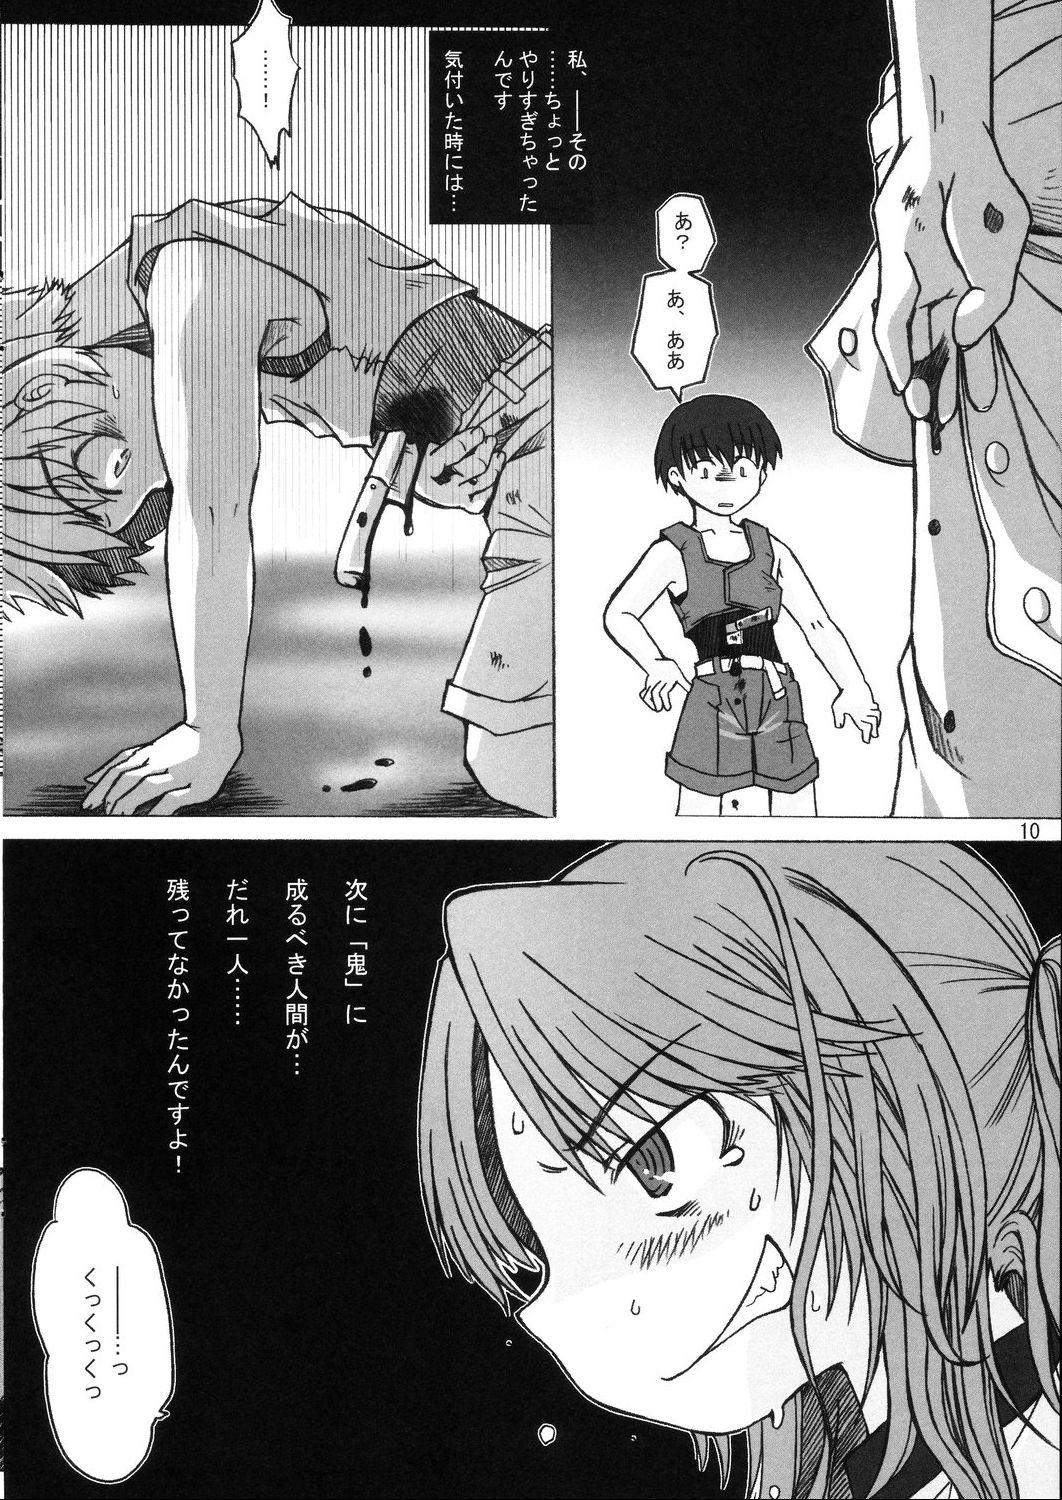 Euro Hinamisawa no hon - Shin Kikoku hen - Higurashi no naku koro ni | when they cry Fudendo - Page 10